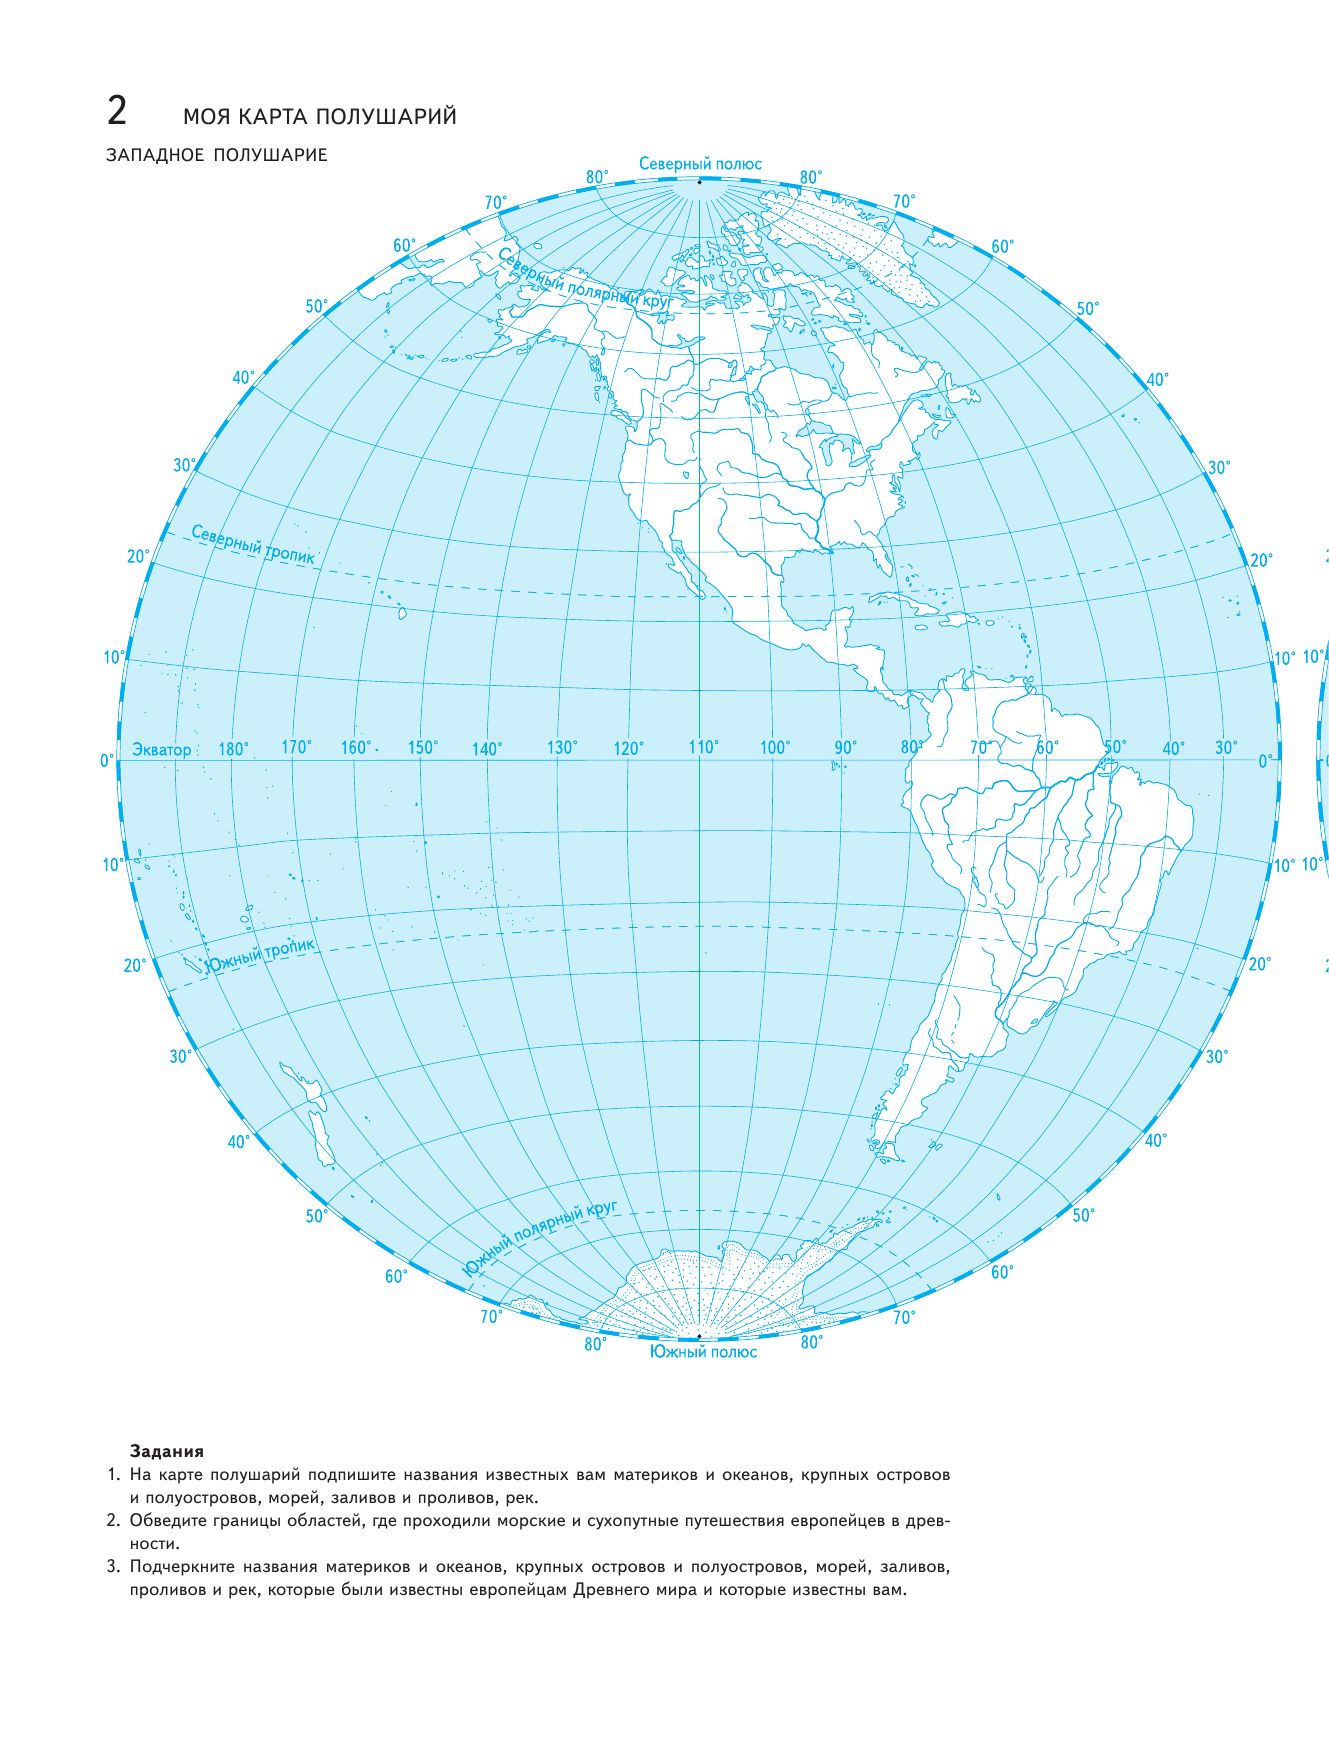 Контурная карта 5 класс косолапова. Карта полушарий 6 класс география контурная карта. Западное полушарие контурная карта география. Западное полушарие и Восточное полушарие контурная карта. Карта полушарий 5 класс география контурная карта.